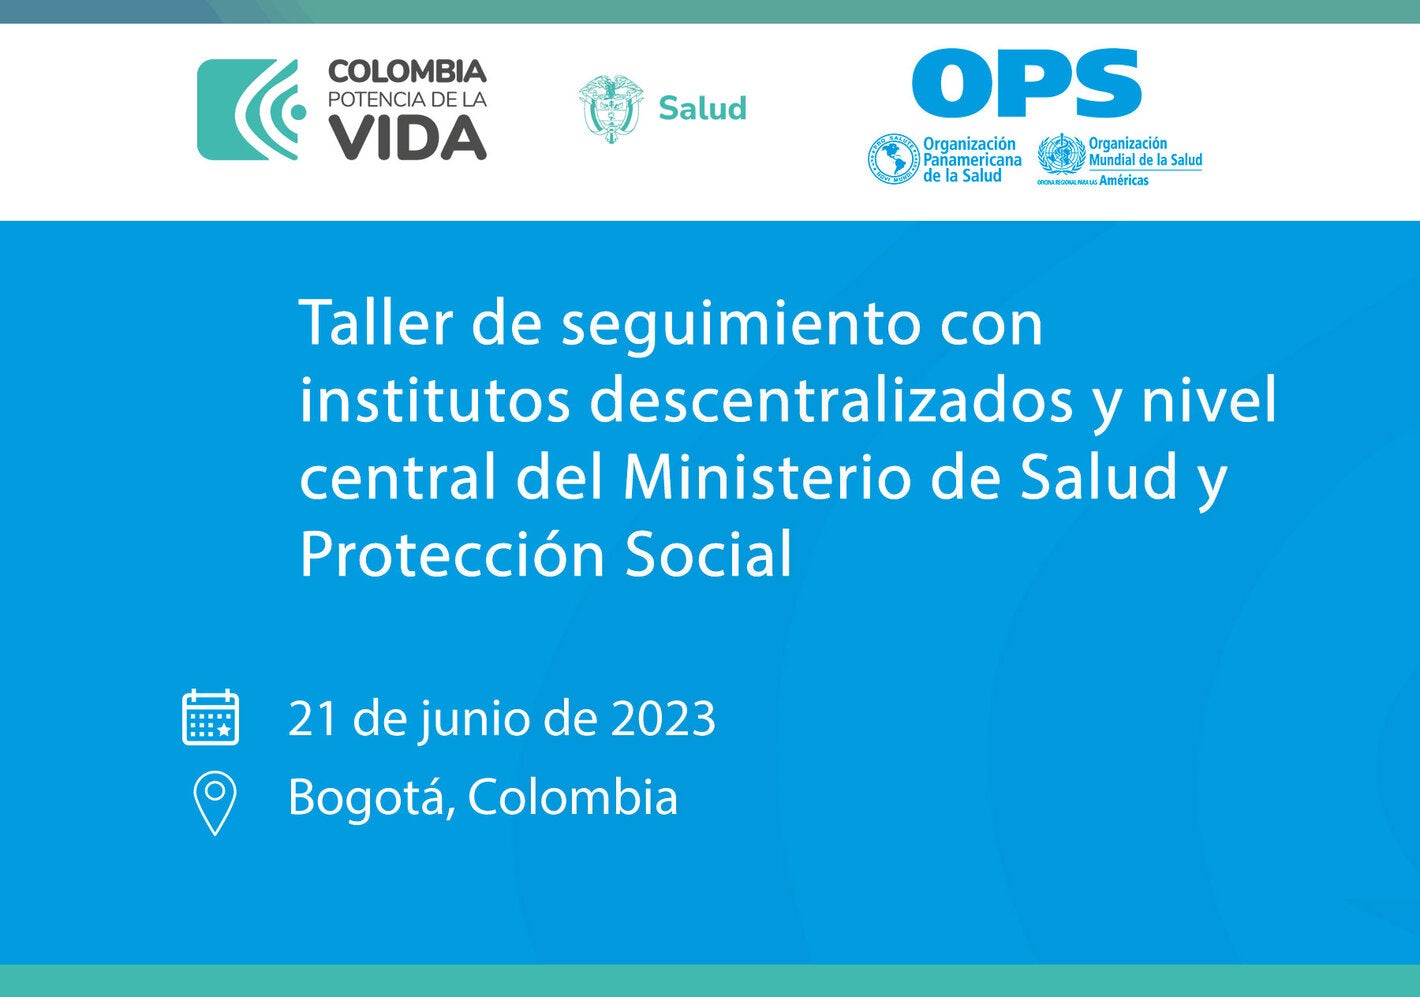 Taller de seguimiento con institutos descentralizados y nivel central del Ministerio de Salud y Protección Social